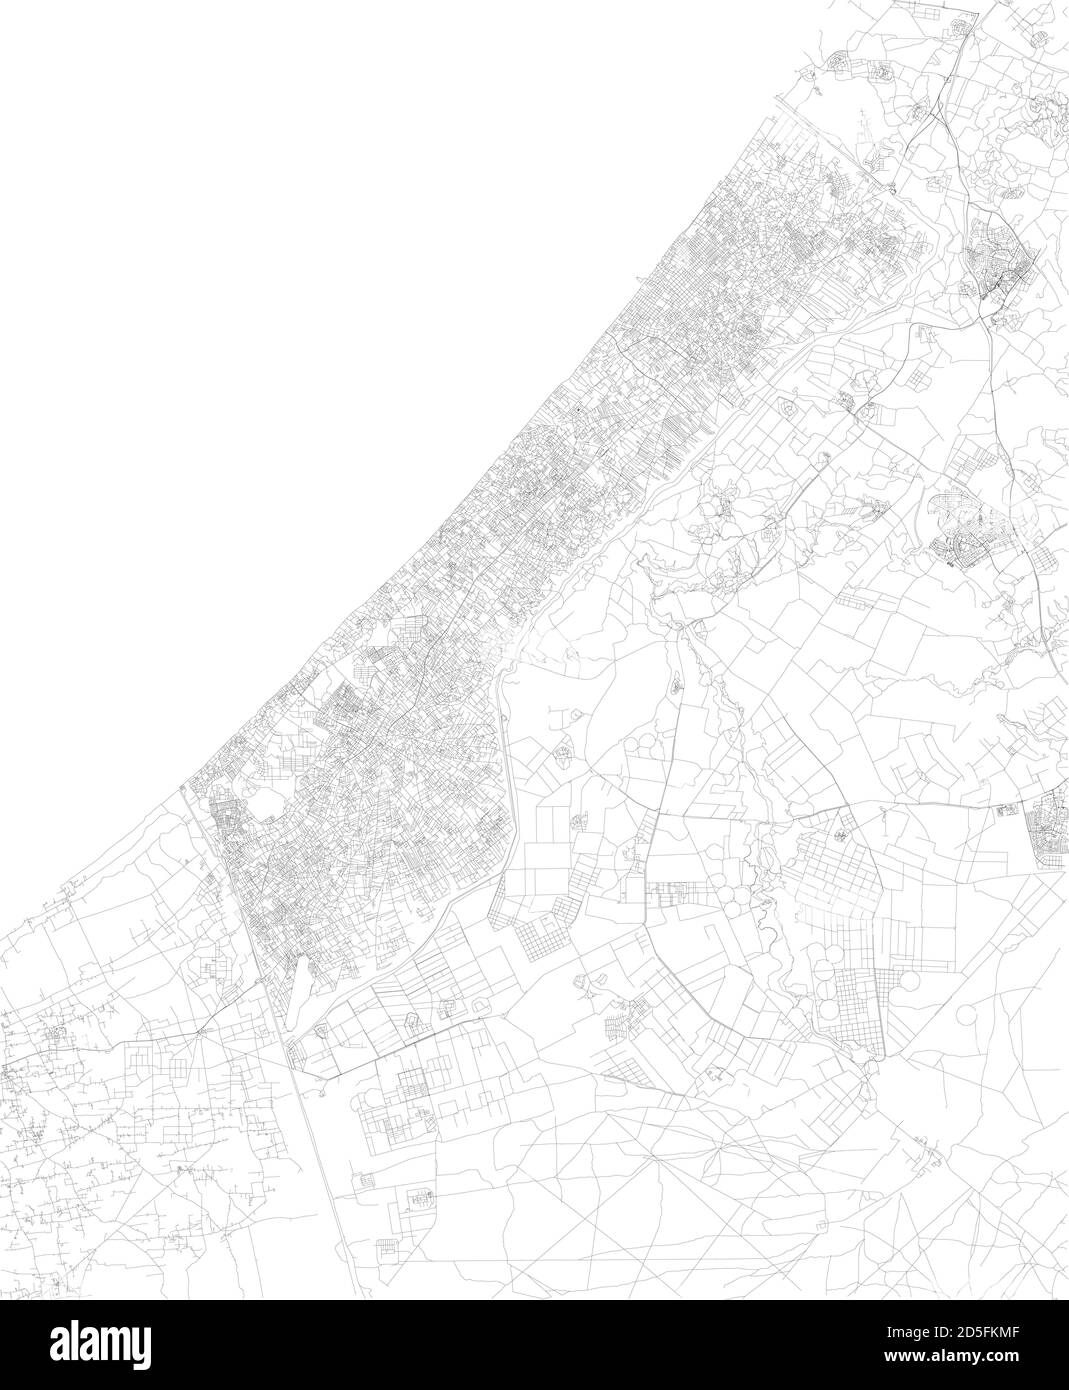 La vista satellitare della striscia di Gaza è un territorio palestinese autonomo sulla costa orientale del Mar Mediterraneo. Mappa, strade della zona Illustrazione Vettoriale